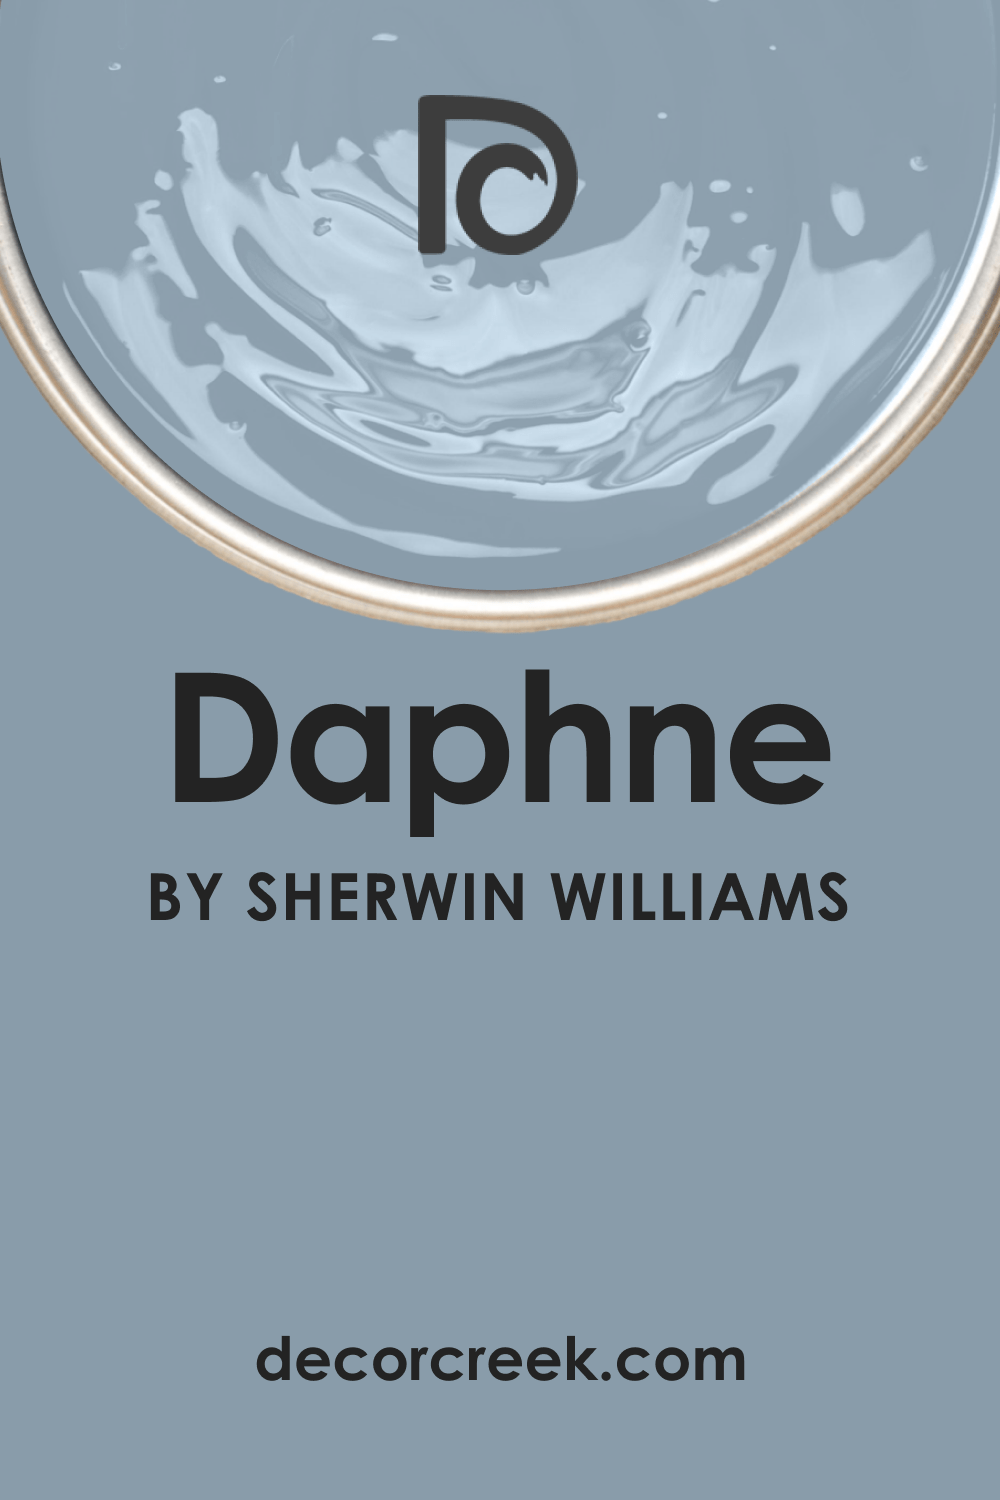 SW Daphne Paint. What Color Is It?